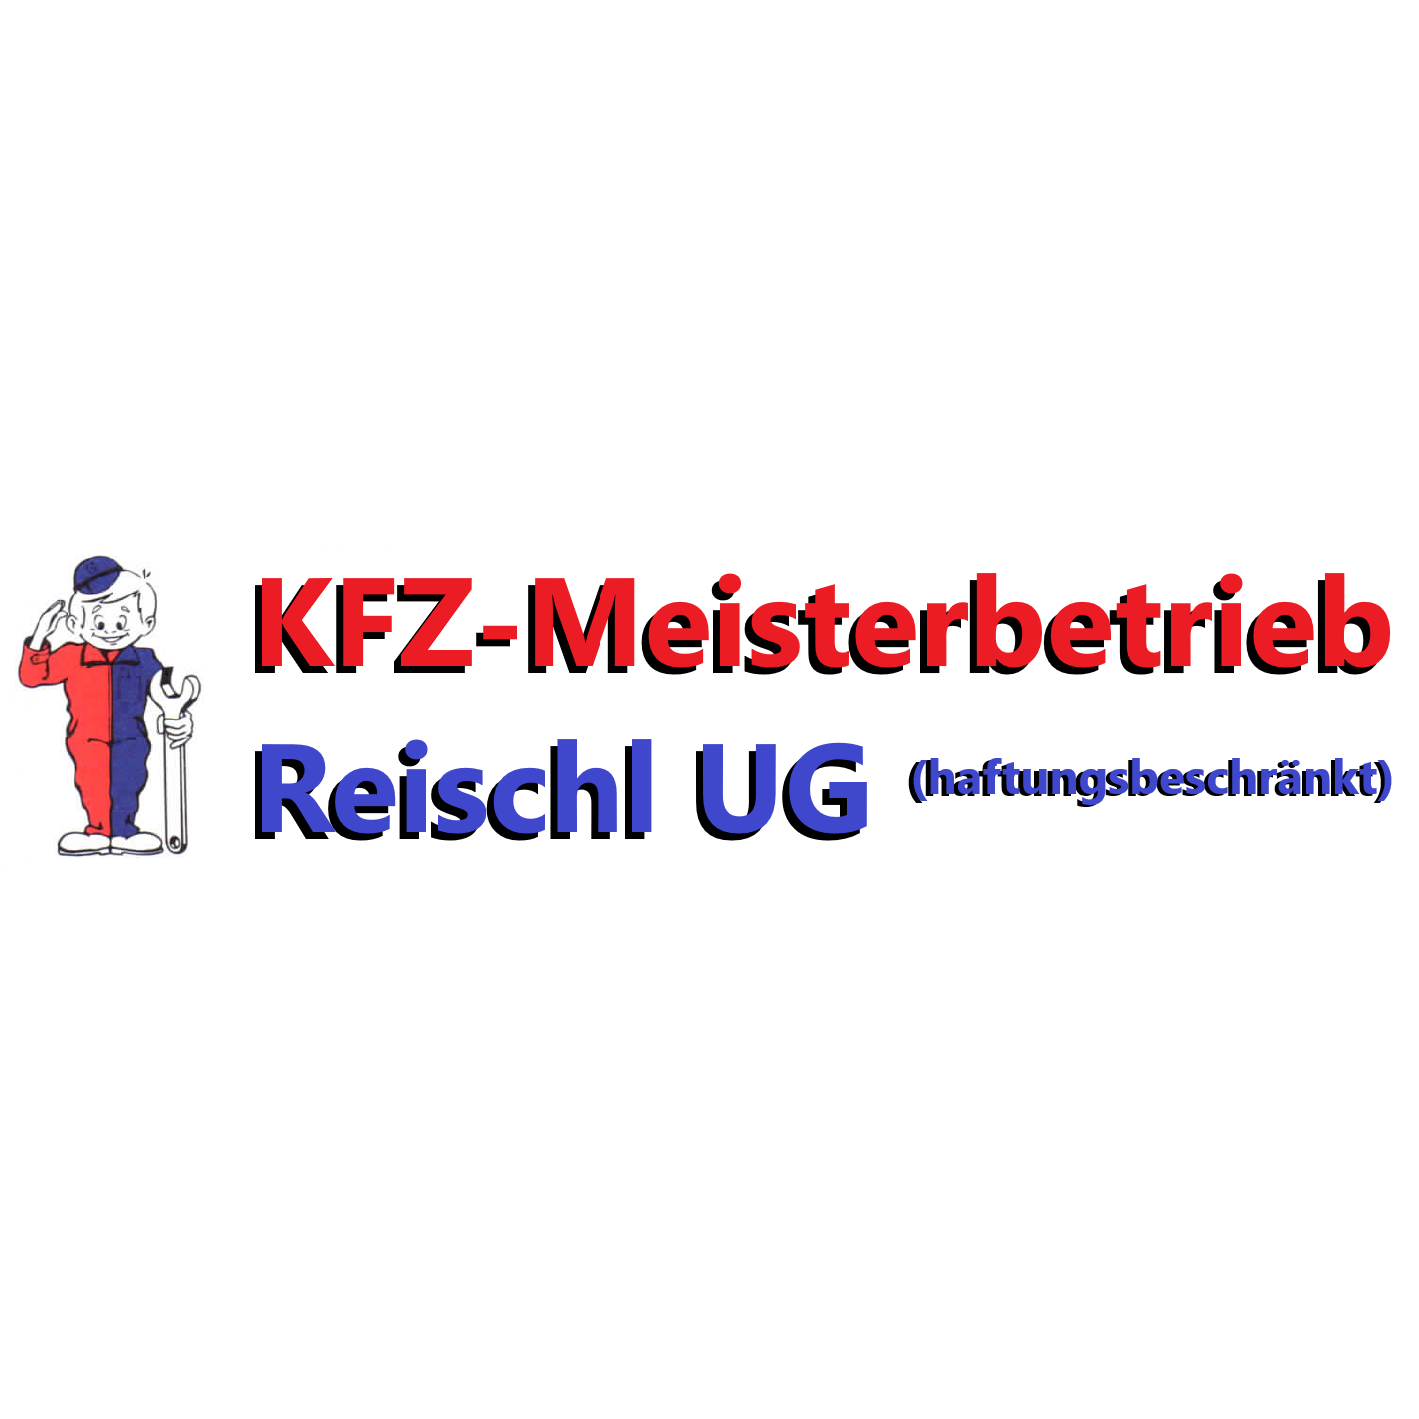 KfZ-Meisterbetrieb Reischl UG Logo